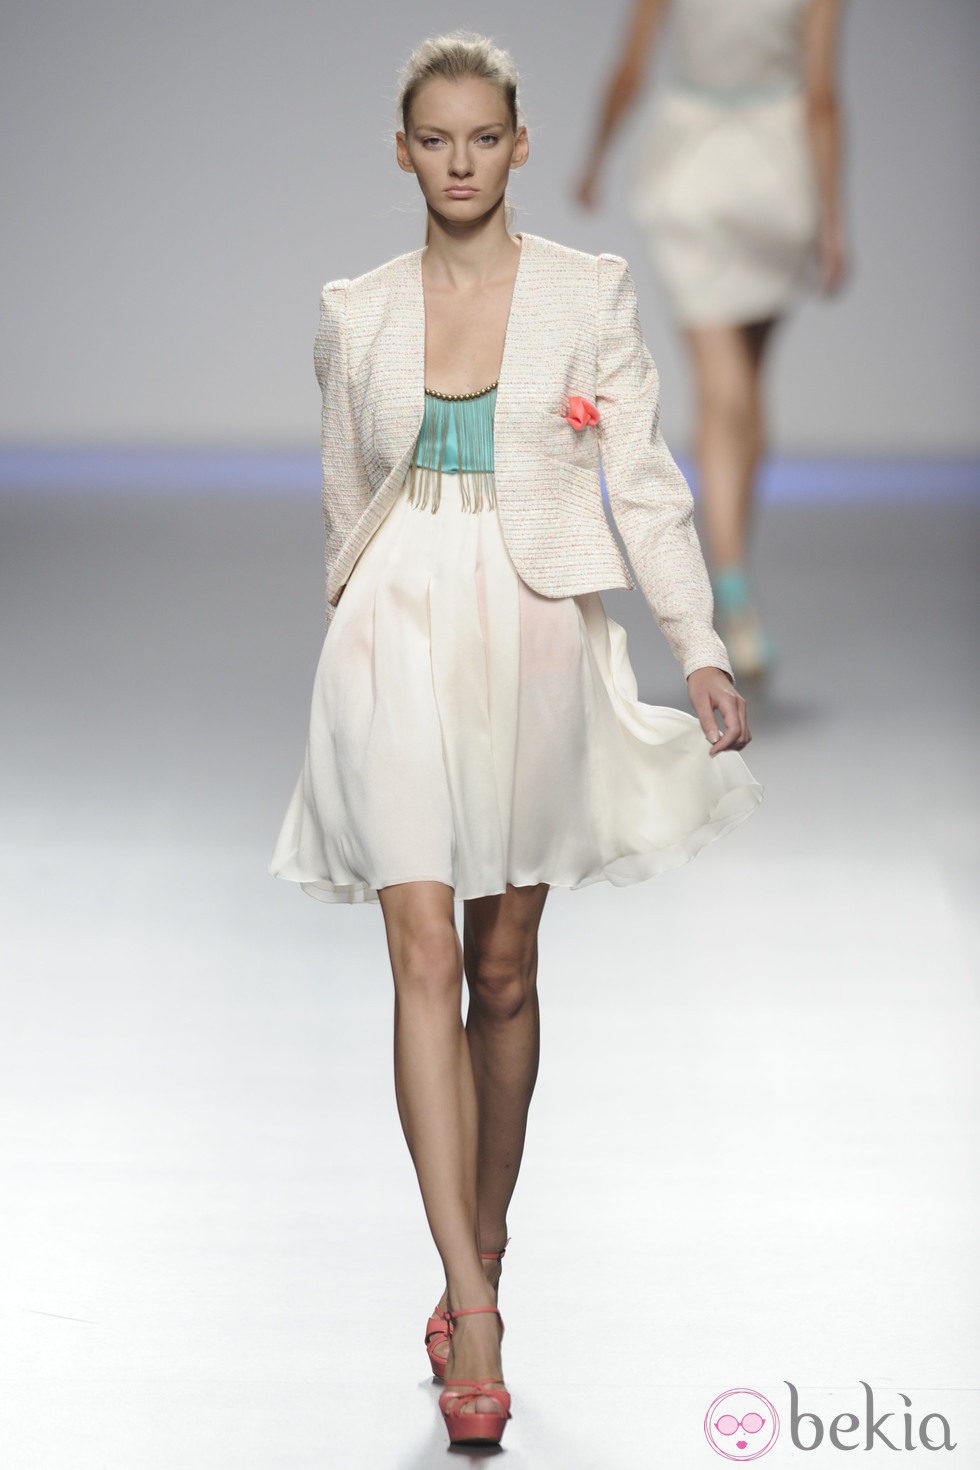 Vestido blanco y cian con flecos y chaqueta blanca de la colección primavera-verano 2013 de Kina Fernández